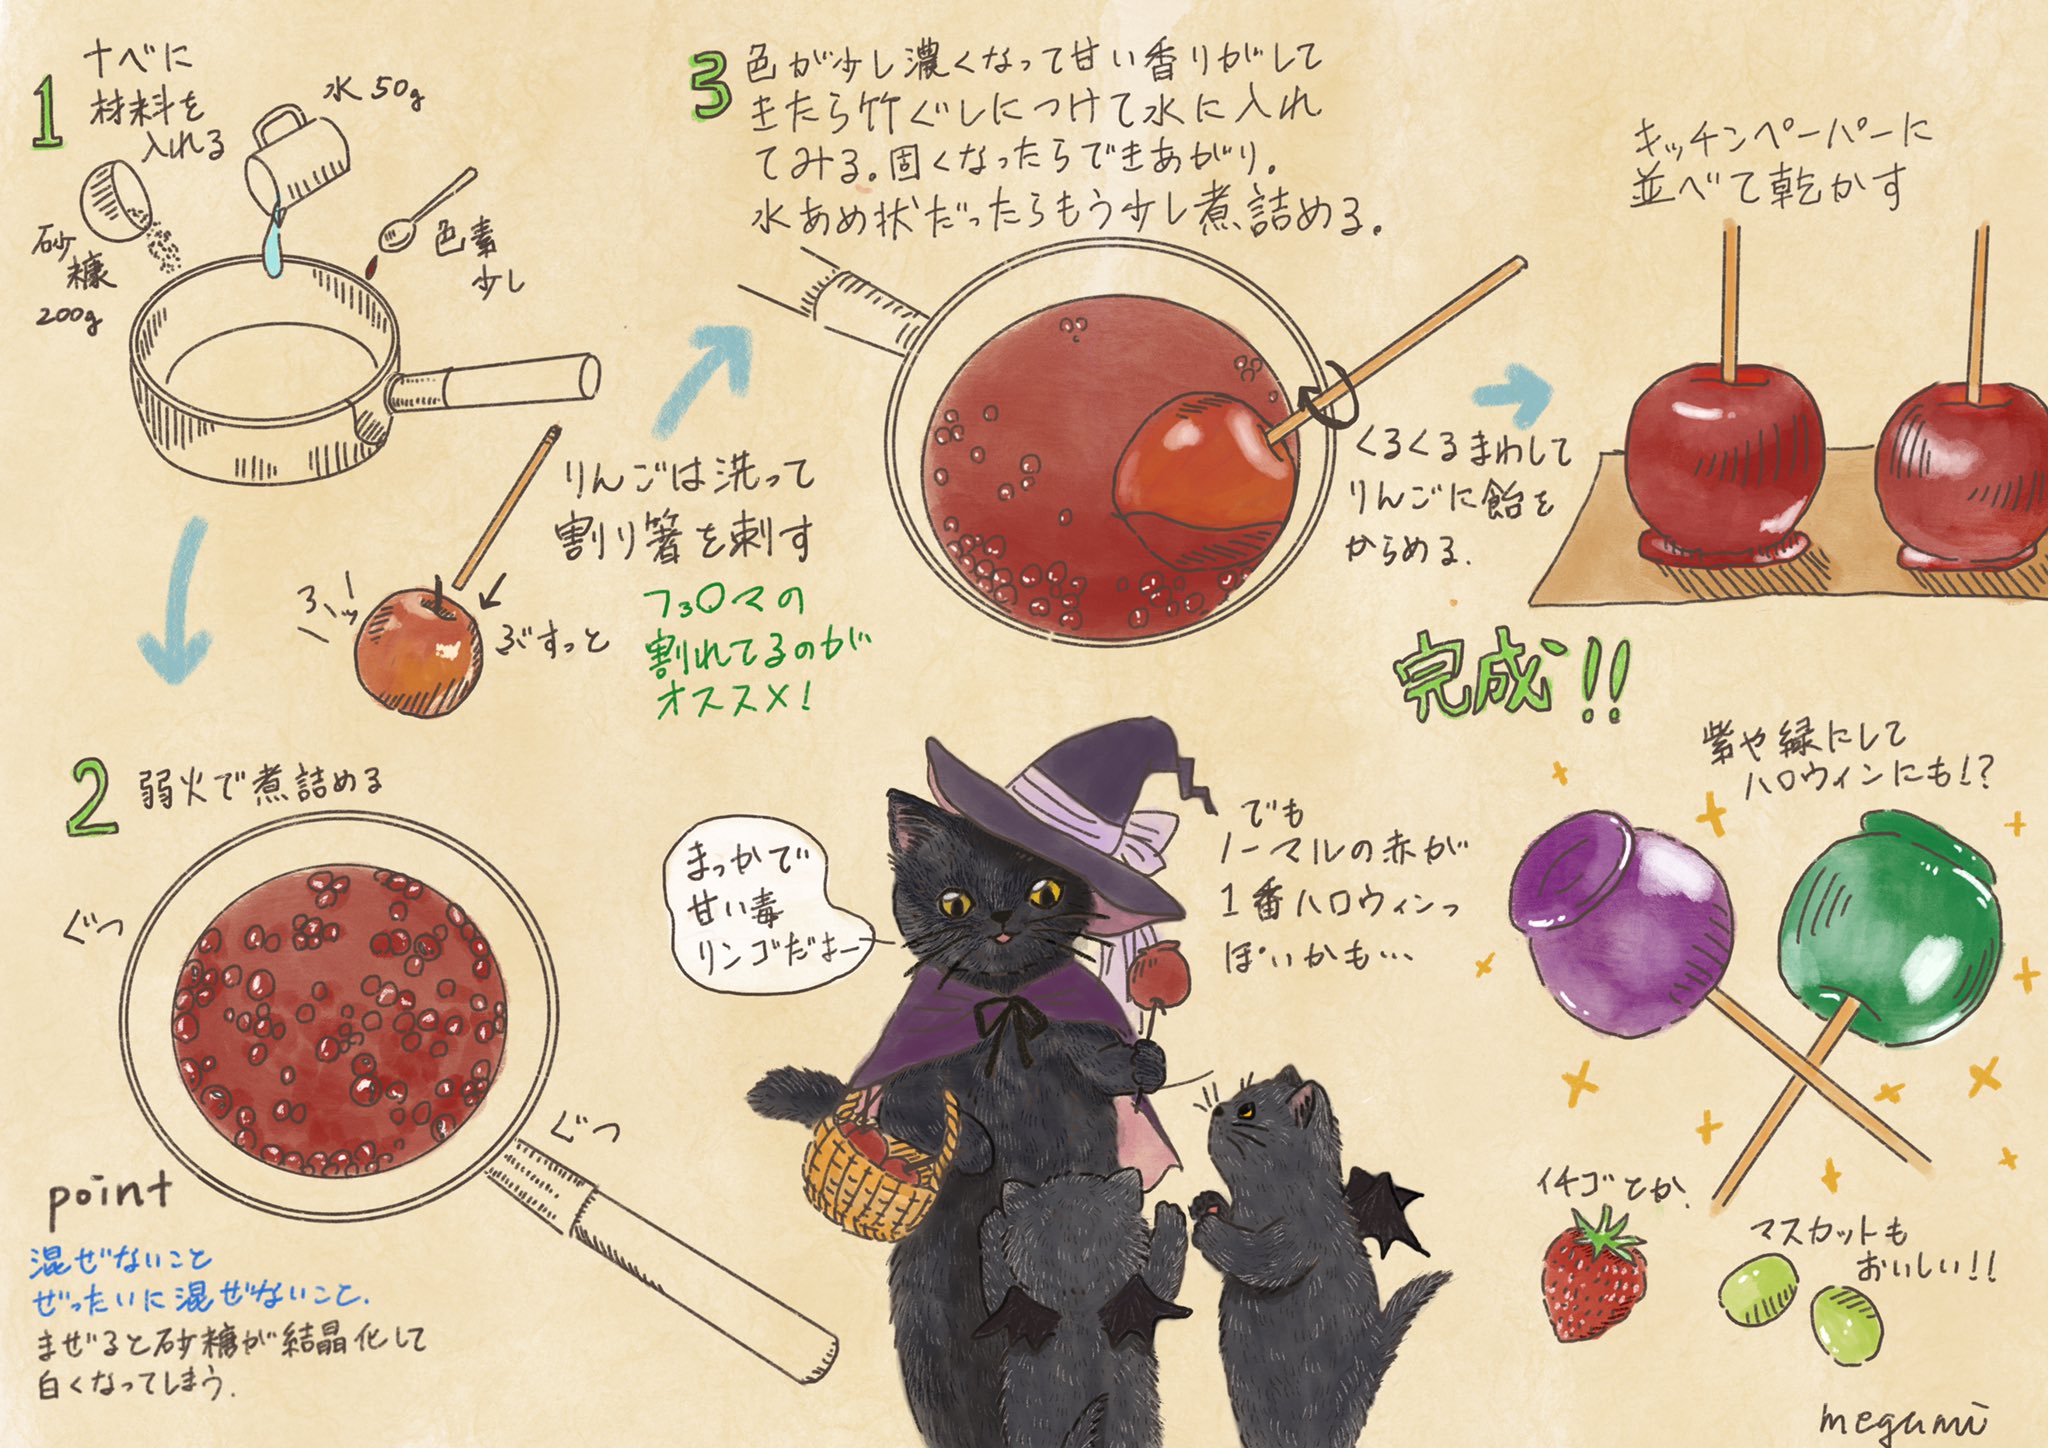 石川 恵 いしかわめぐみ りんご飴の作り方 材料 砂糖0g 水50g 色素少し 林檎 シナモンなどまぶすもの あれば ポイントは飴状になるまでしっかり煮詰めることと混ぜないことです 猫イラスト 黒猫 絵本 挿絵 可愛い イラスト